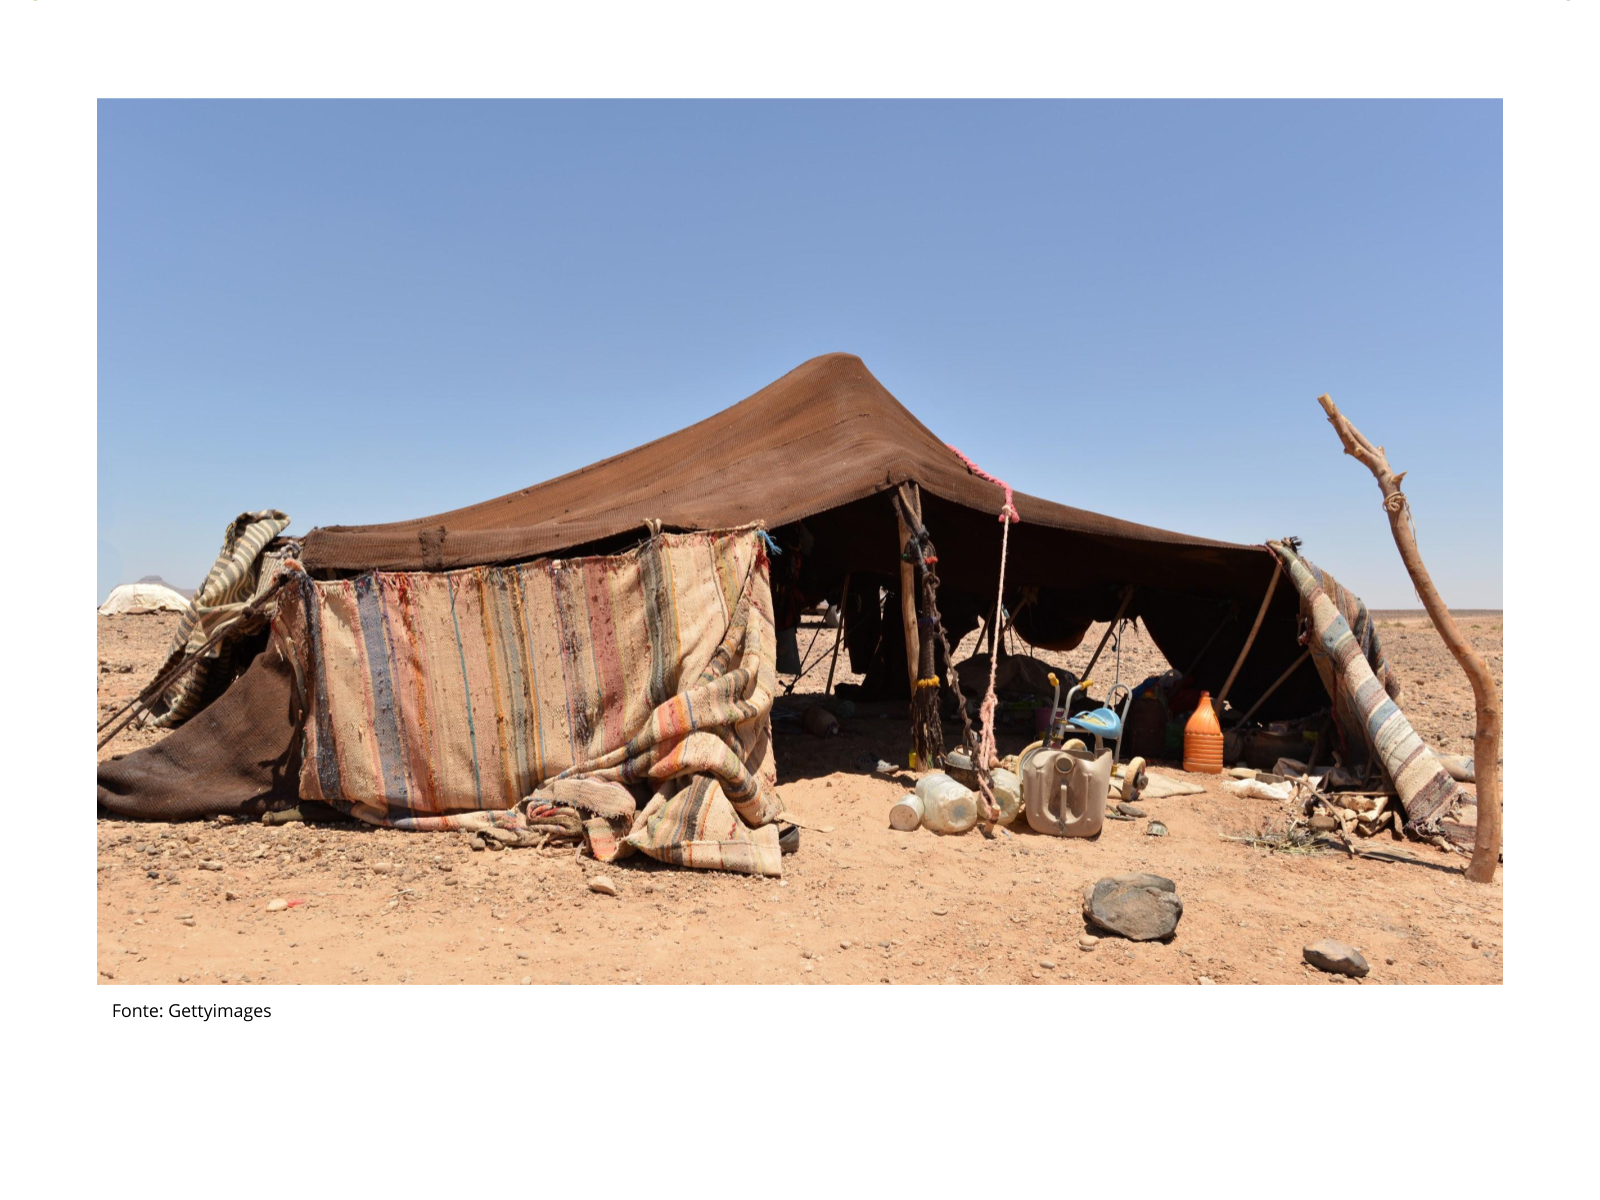 Шатер бедуинов фелидж. Фелидж туарегов. Палатка бедуинов в пустыне сахара Марокко. Лагерь бедуинов в Марокко.